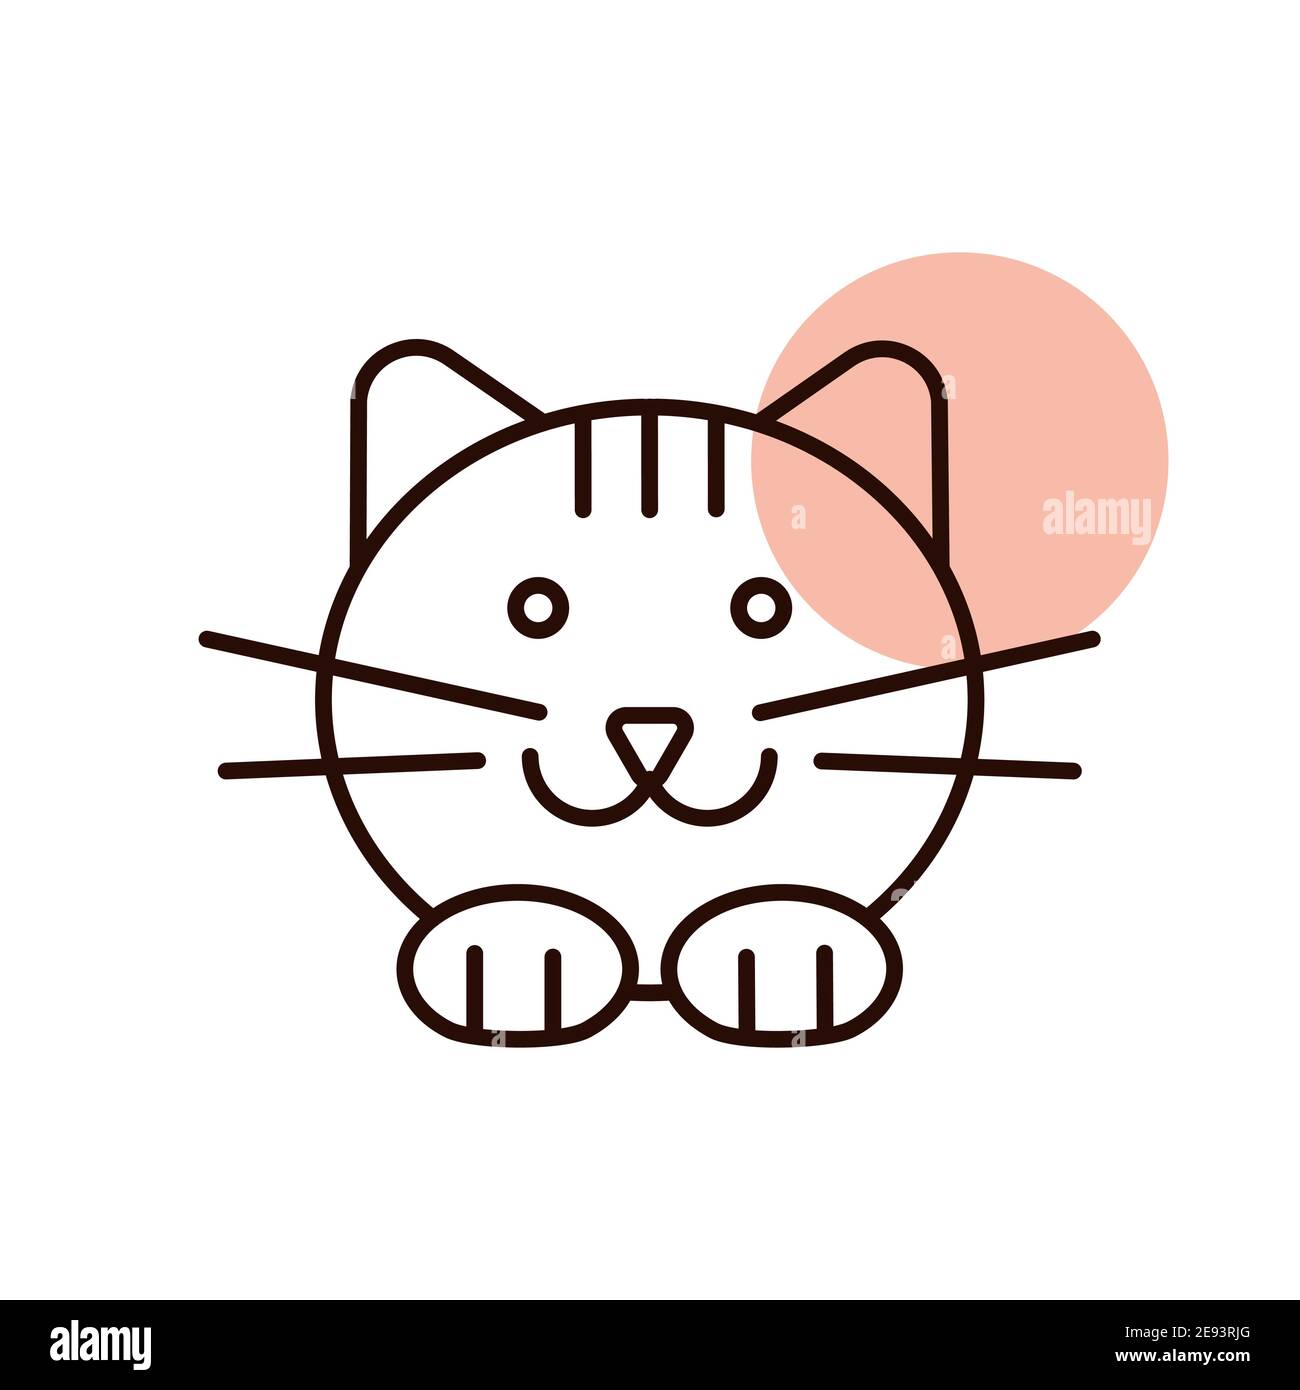 Biểu tượng mèo vector là hình ảnh đáng yêu và được sử dụng rộng rãi trong nhiều lĩnh vực thiết kế. Nếu bạn đam mê vẽ vector và yêu thích những con mèo đáng yêu, hãy xem ngay hình ảnh này để tìm nguồn cảm hứng sáng tạo!